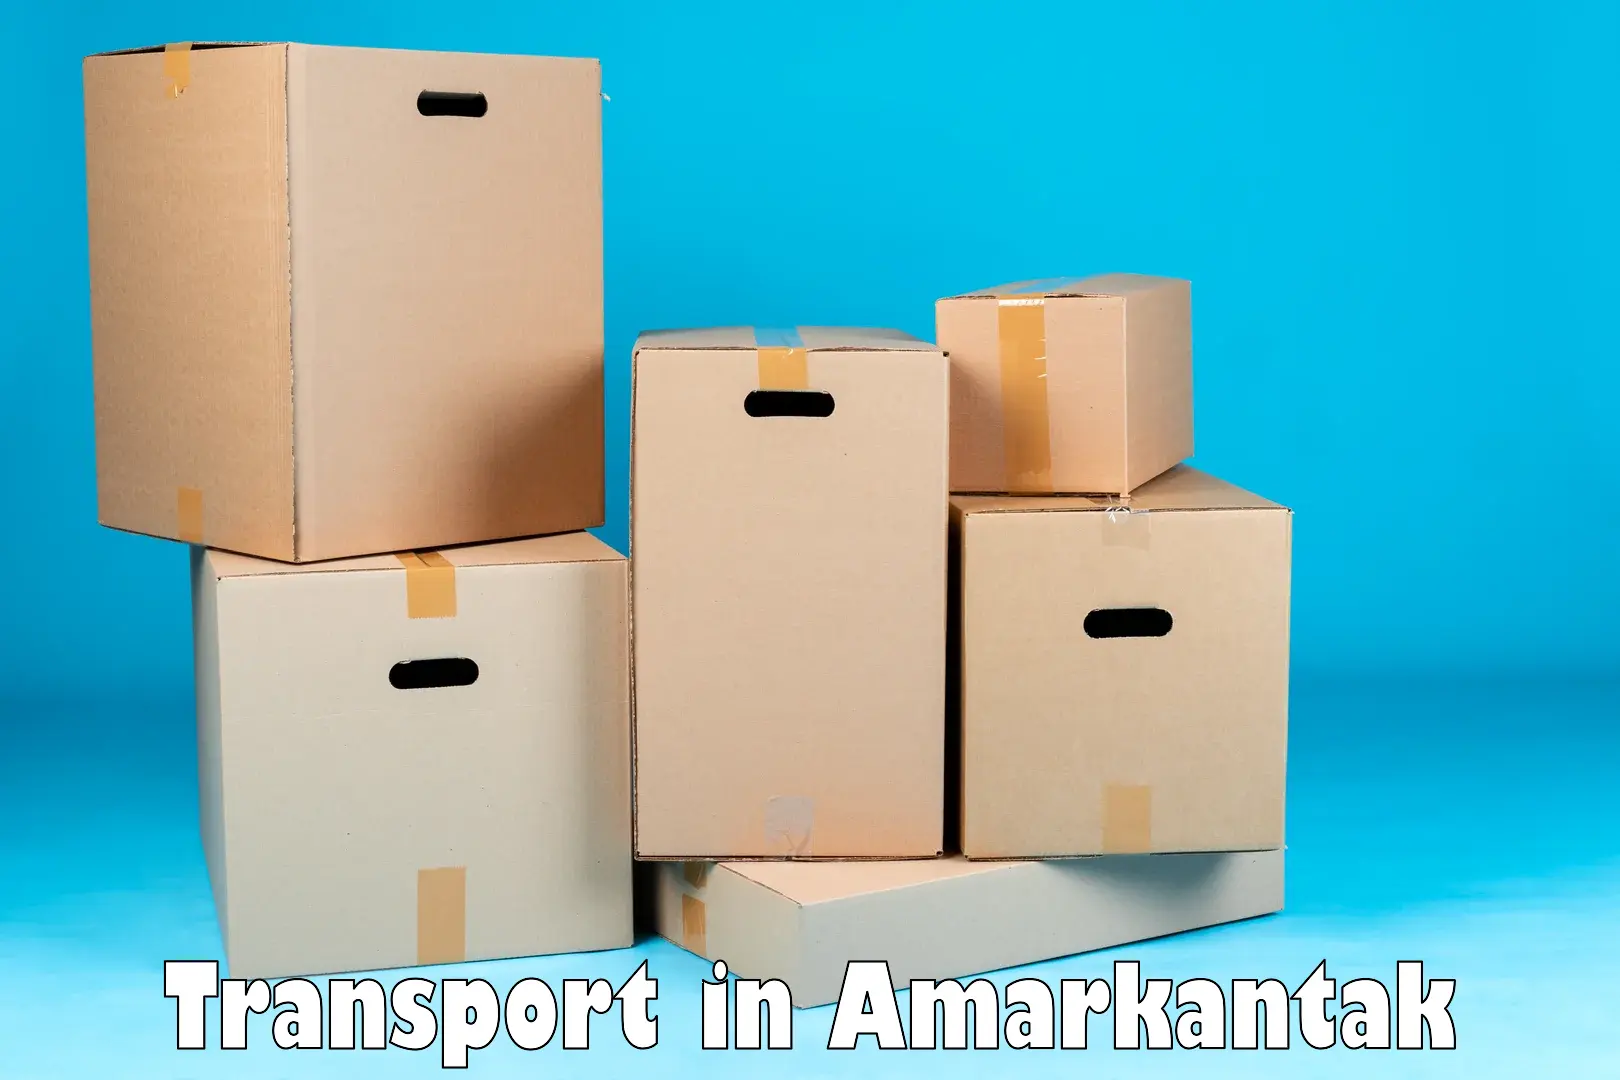 Express transport services in Amarkantak